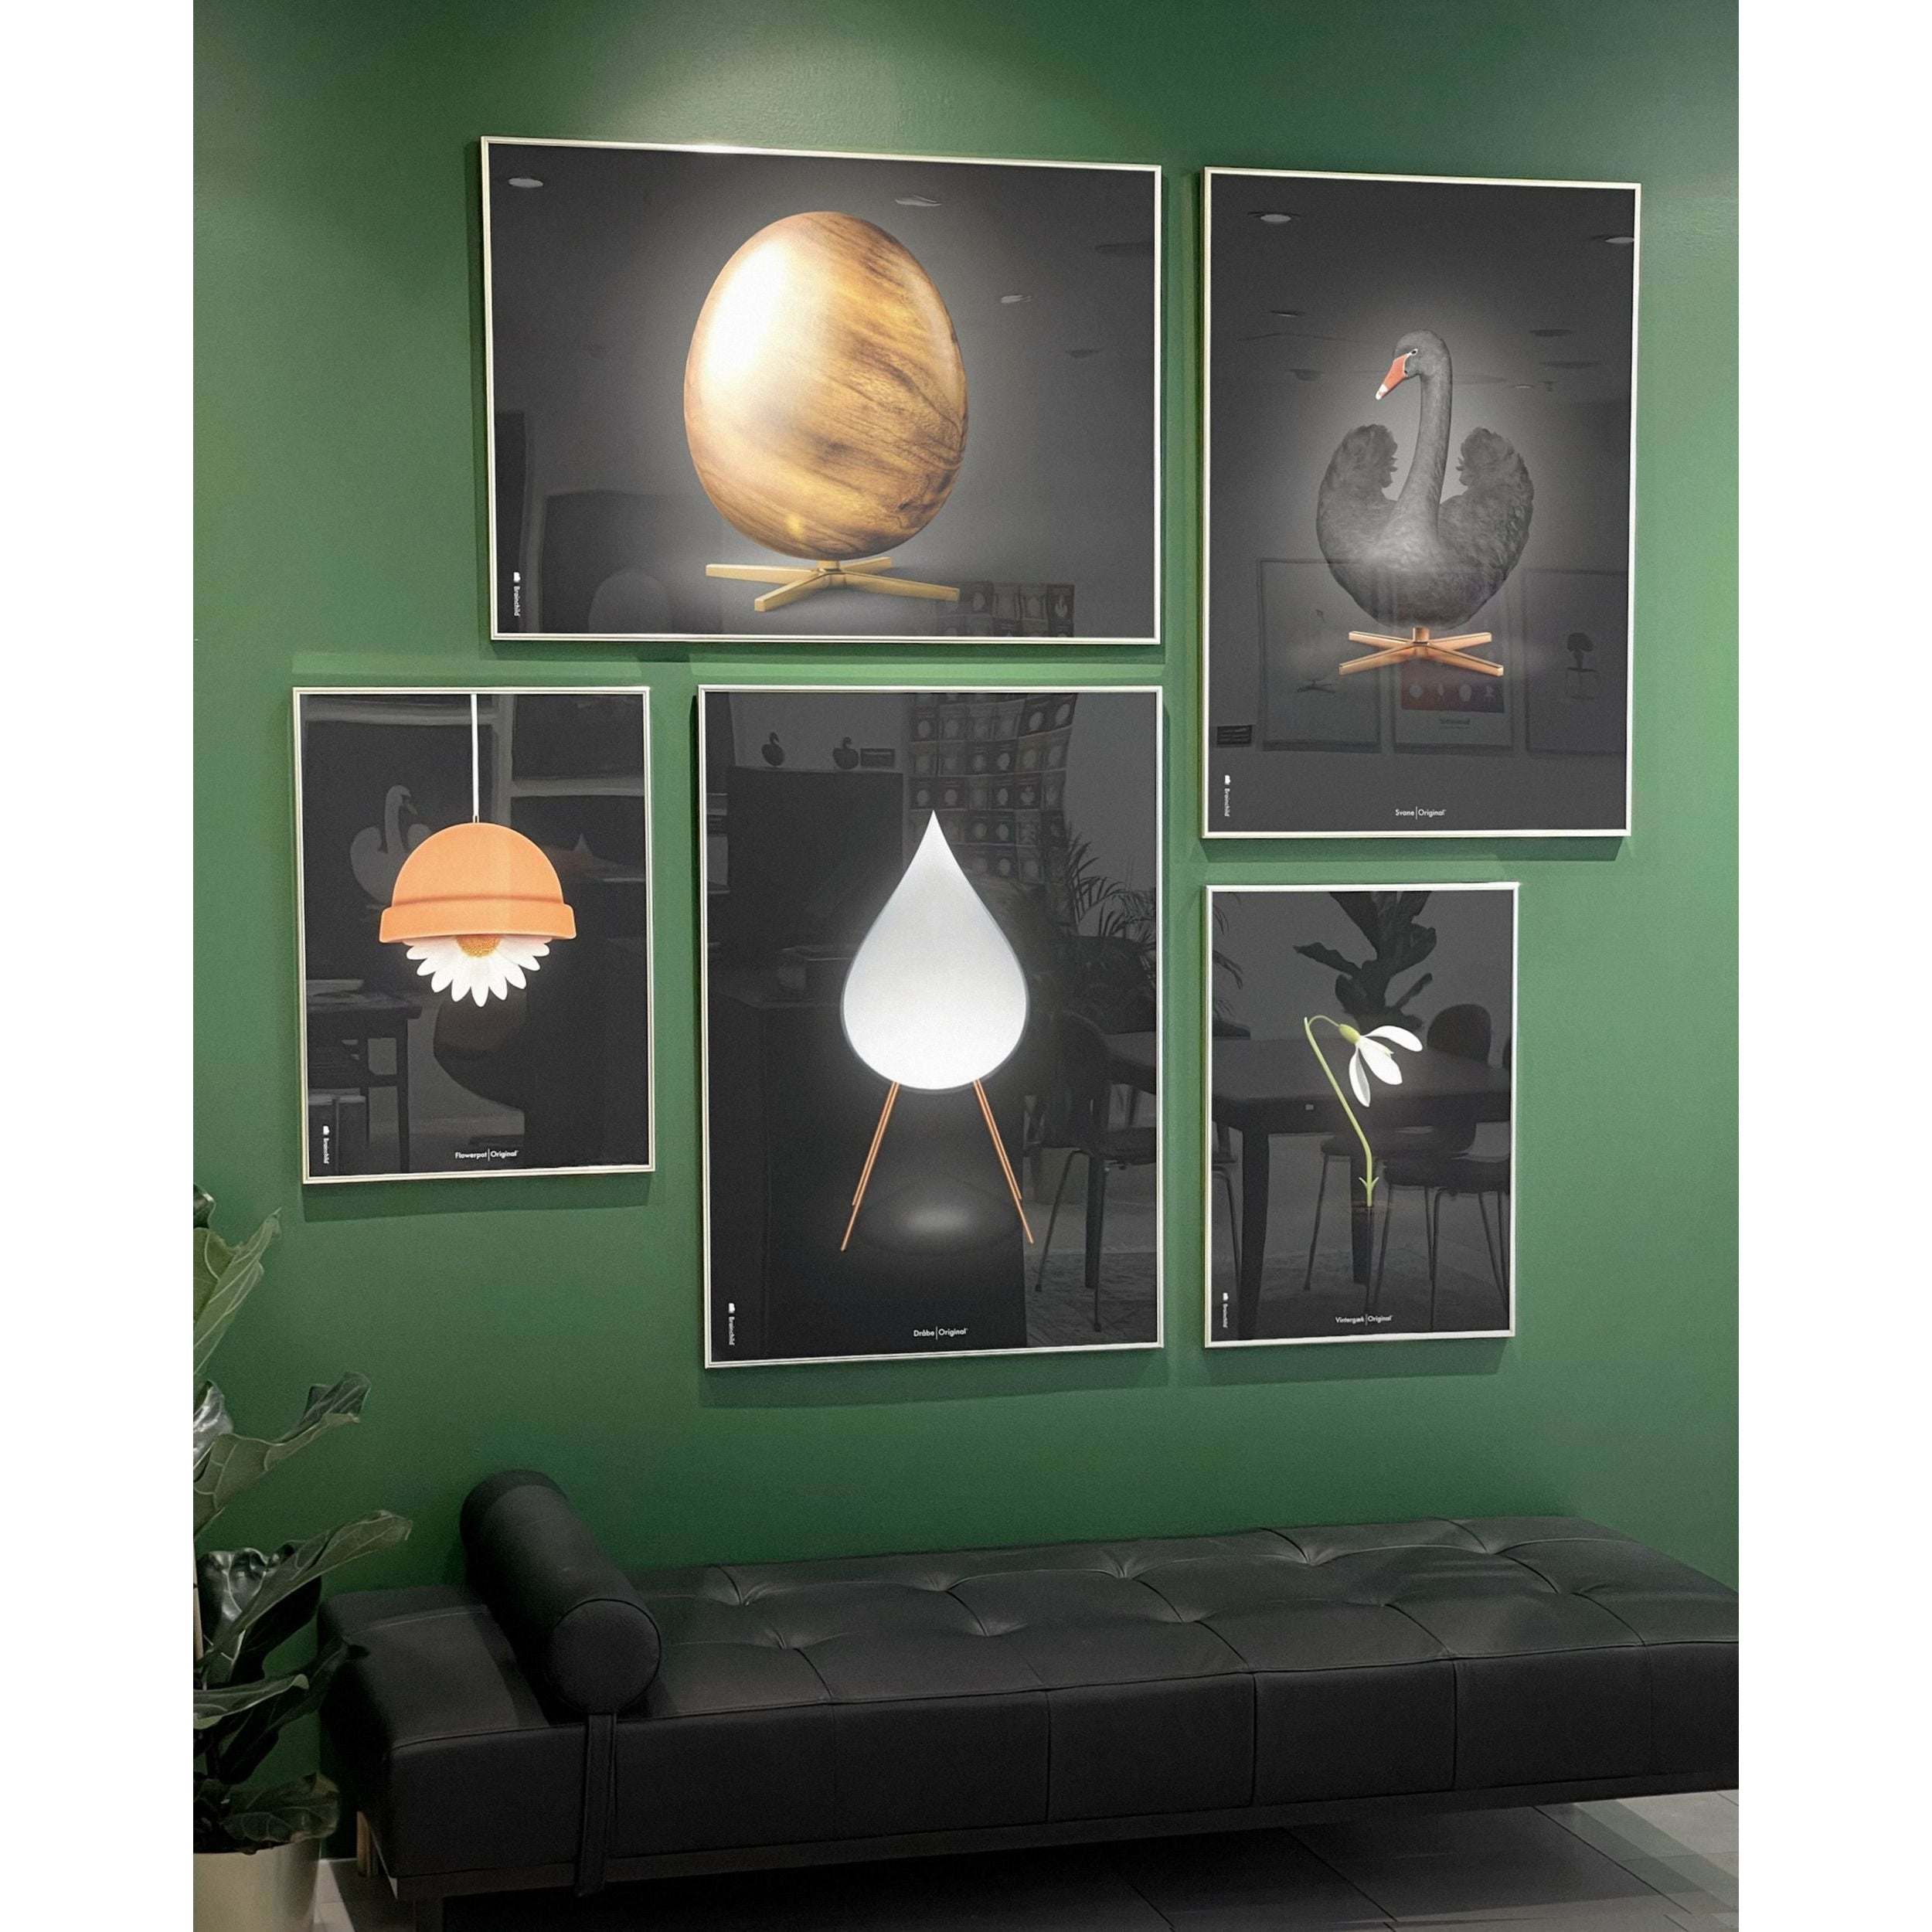 brainchild Eierkruisformaat Poster, frame gemaakt van licht hout A5, zwart